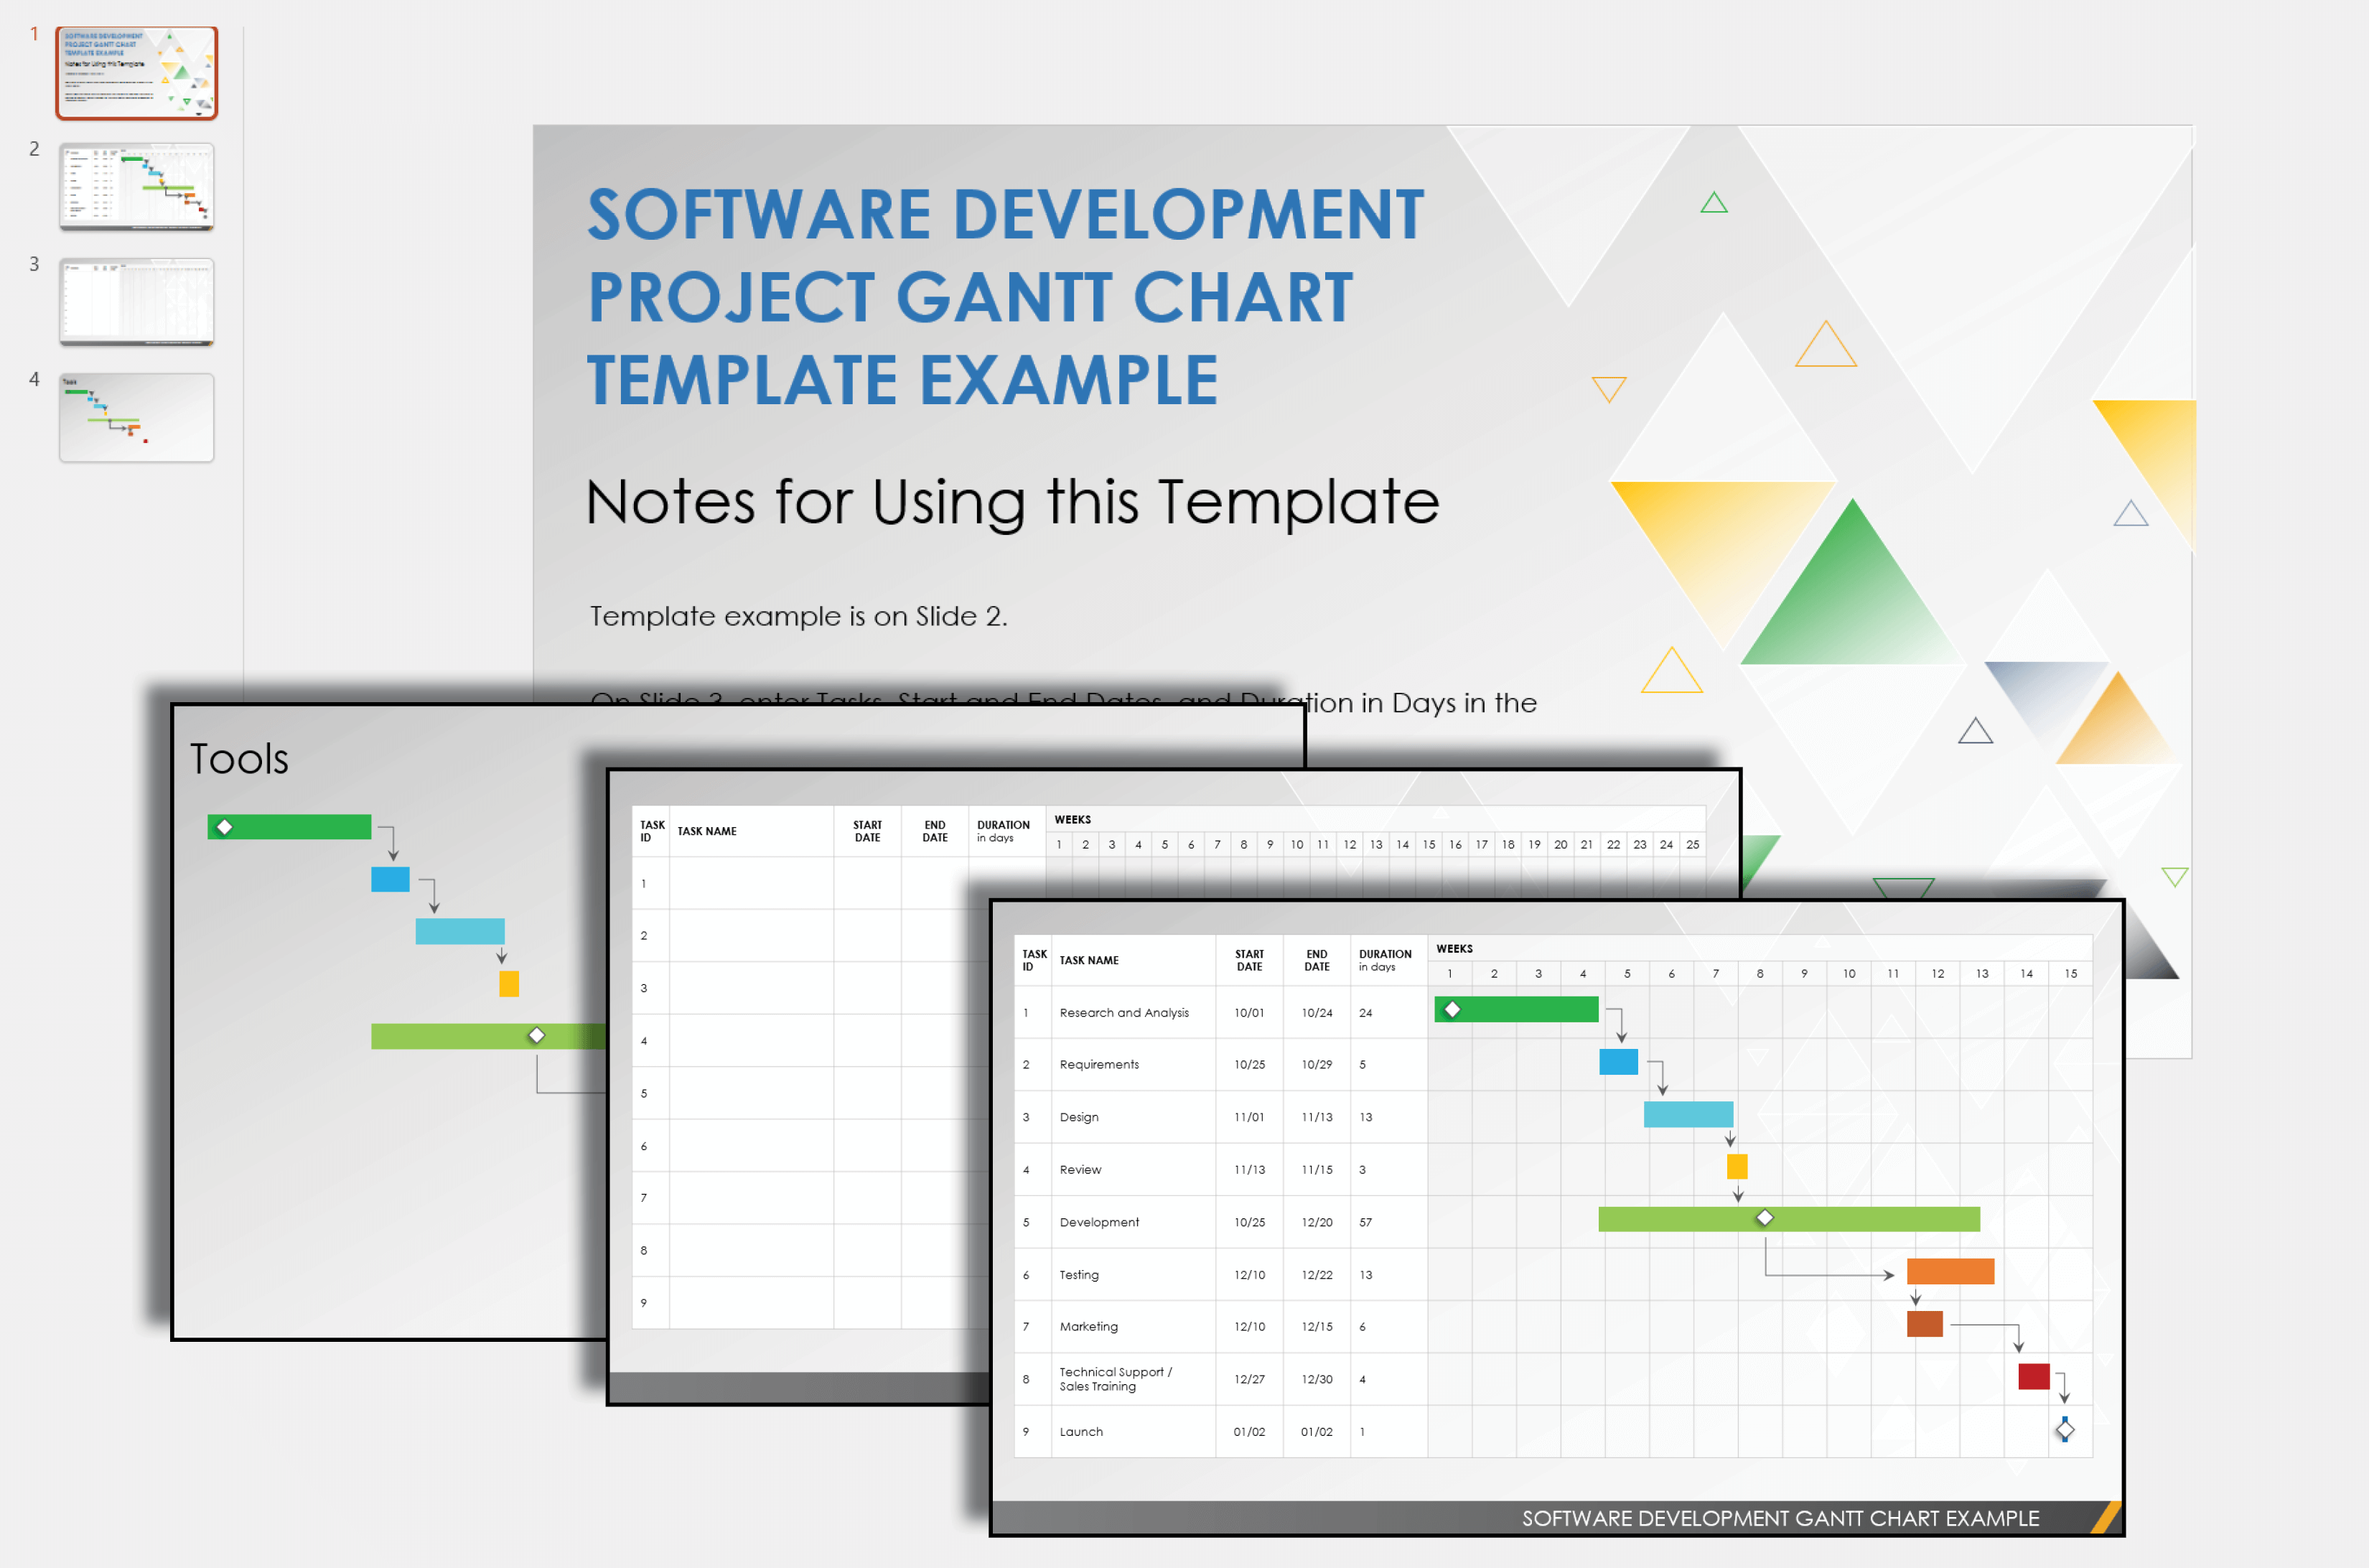 Software Development Project Gantt Chart Template Example